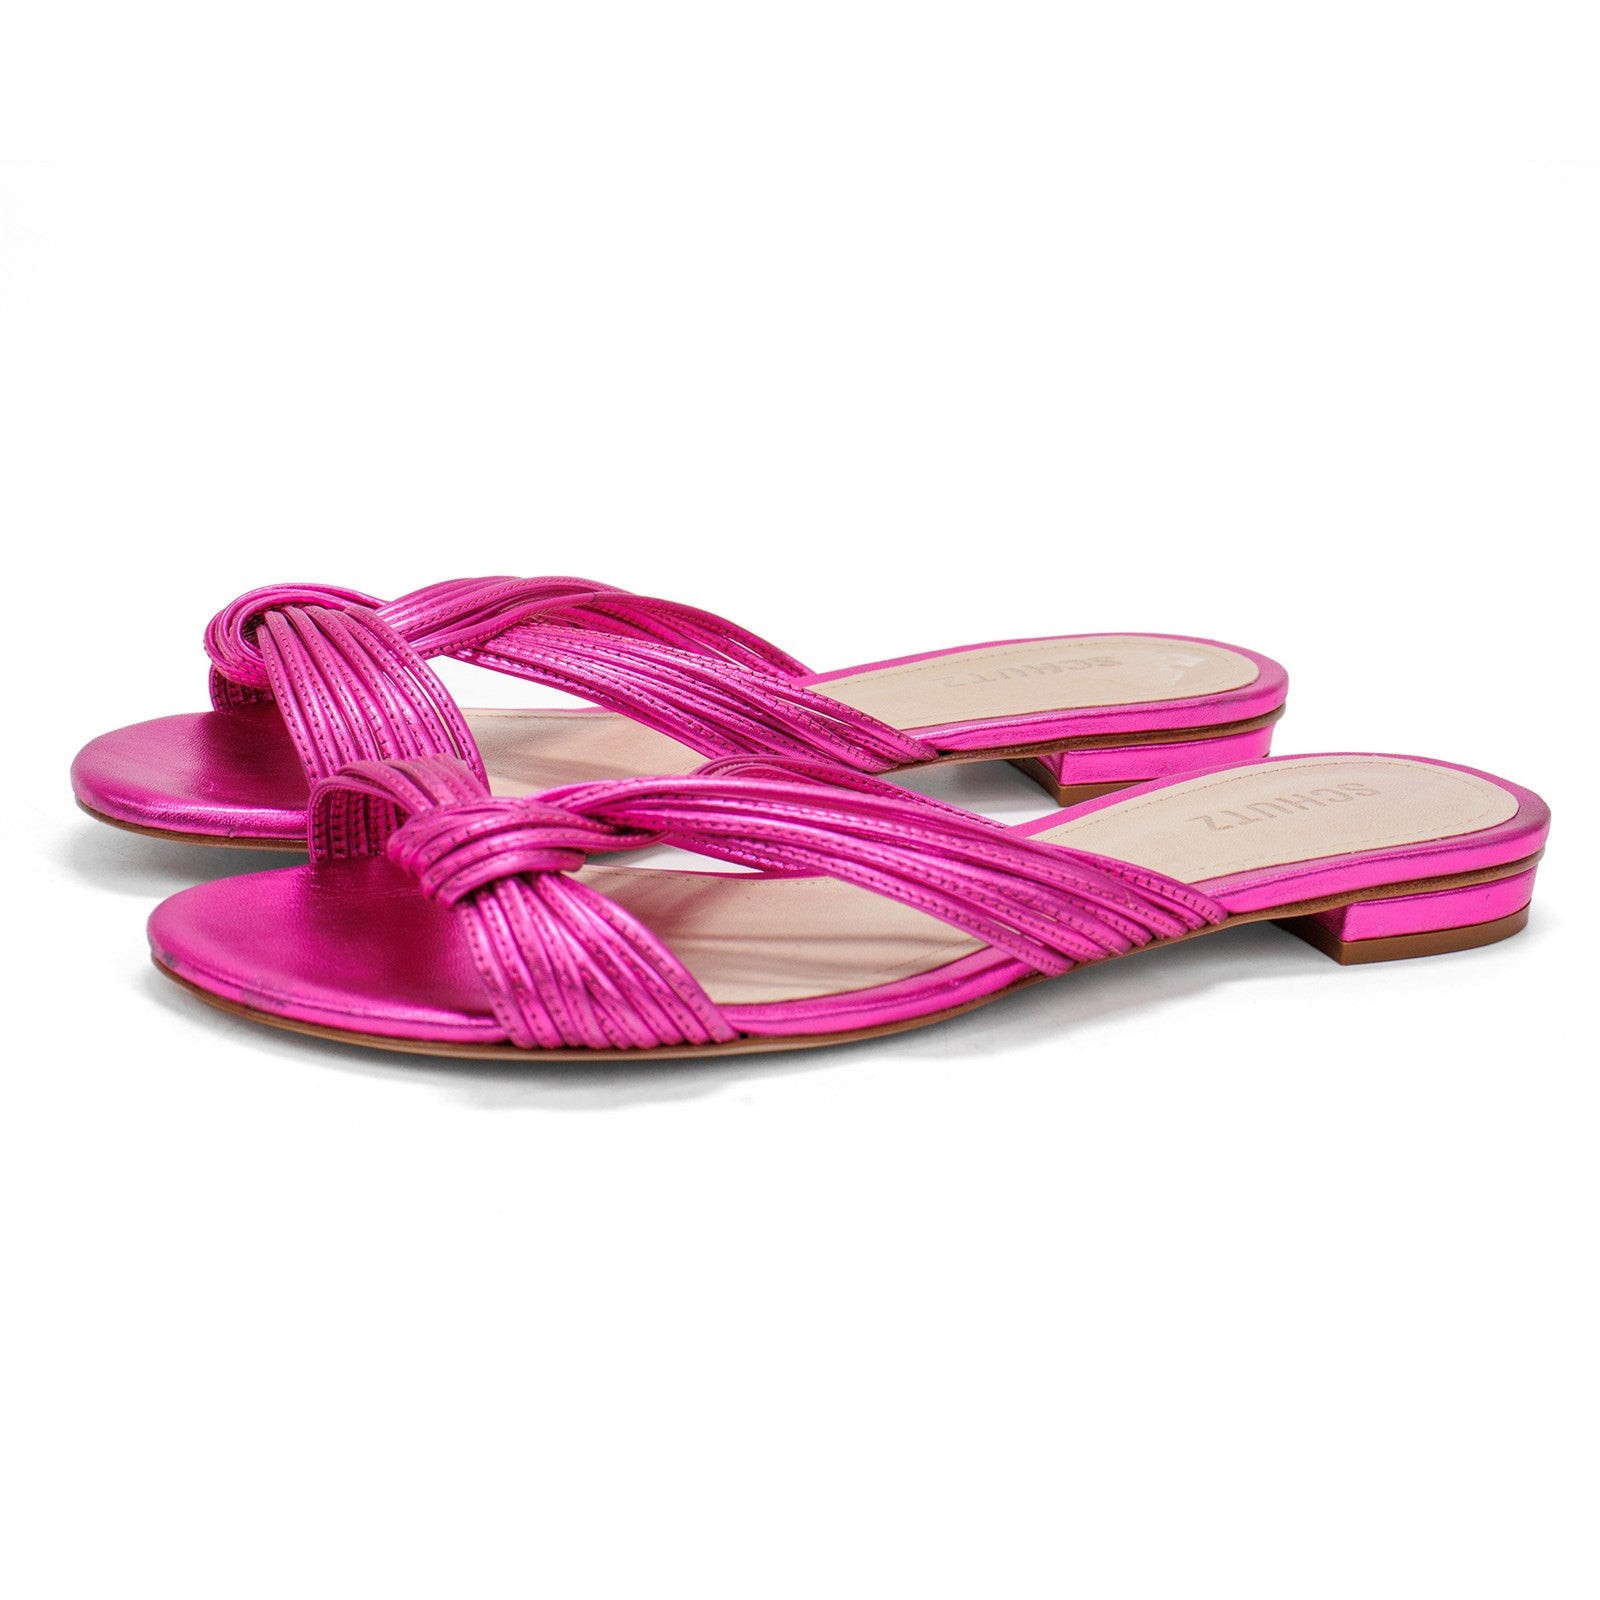 Schutz Women Strappy Flat Sandals